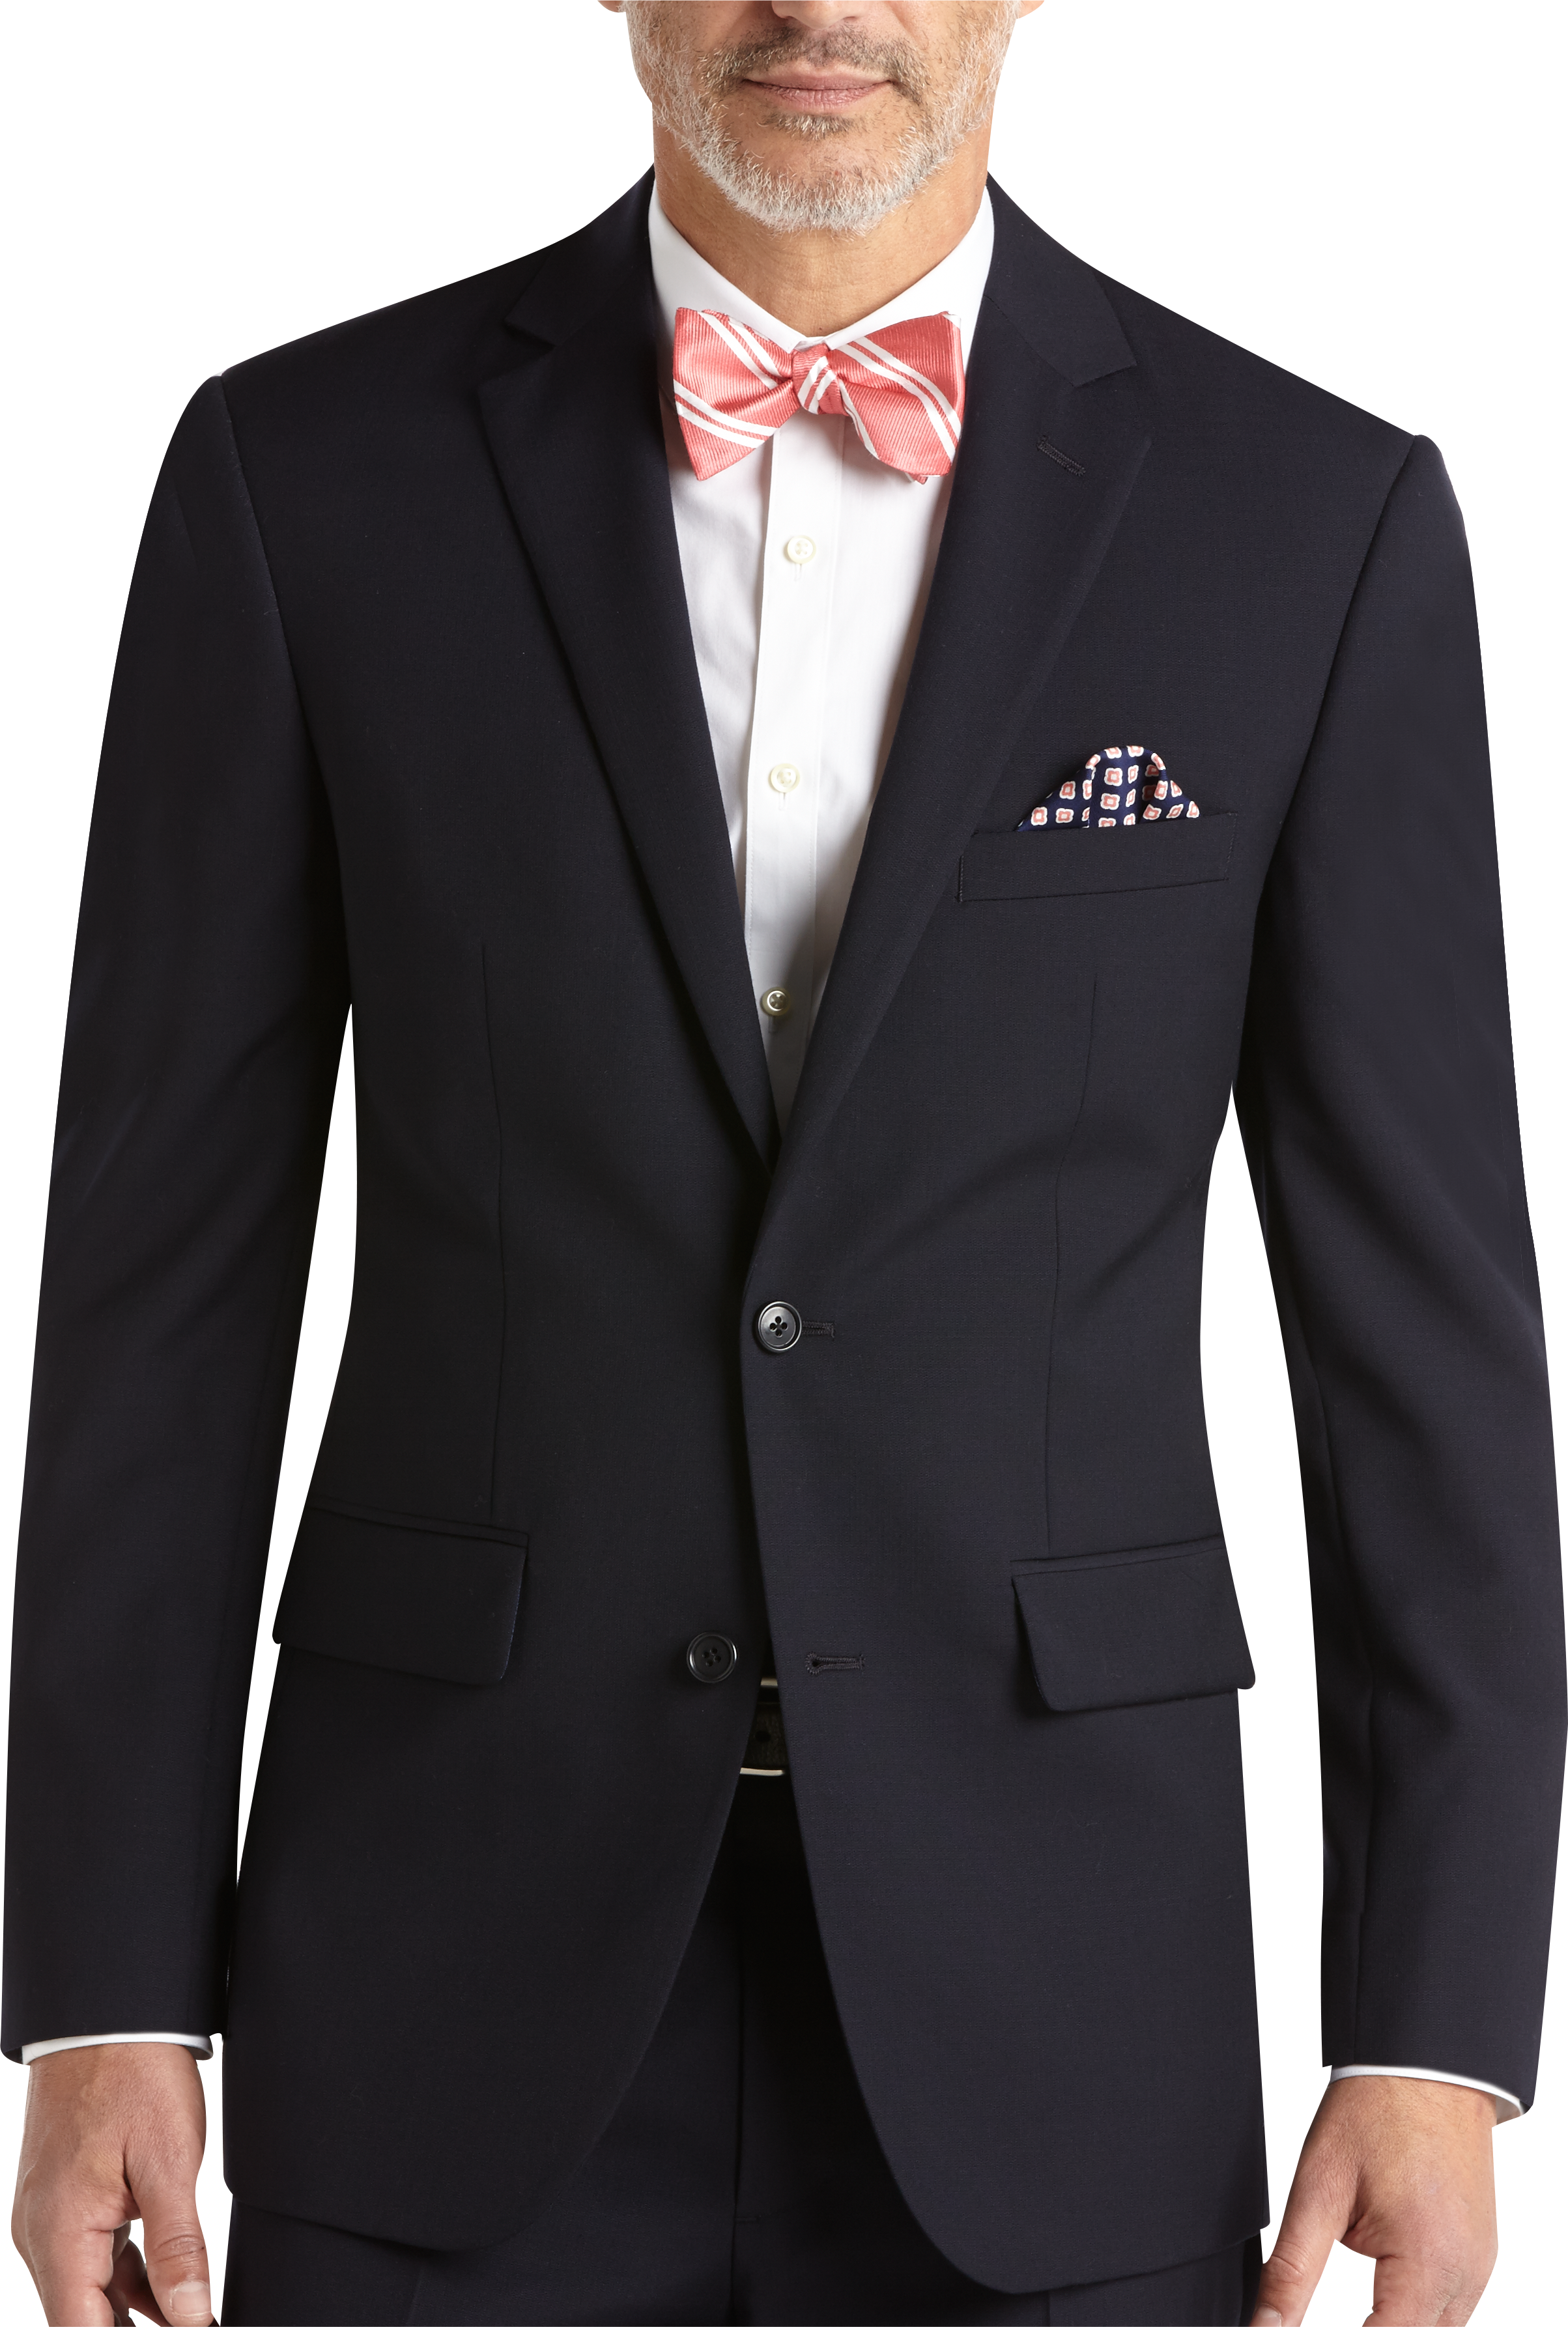 Navy Modern Fit Suit - Men's Suits - Pronto Uomo | Men's Wearhouse